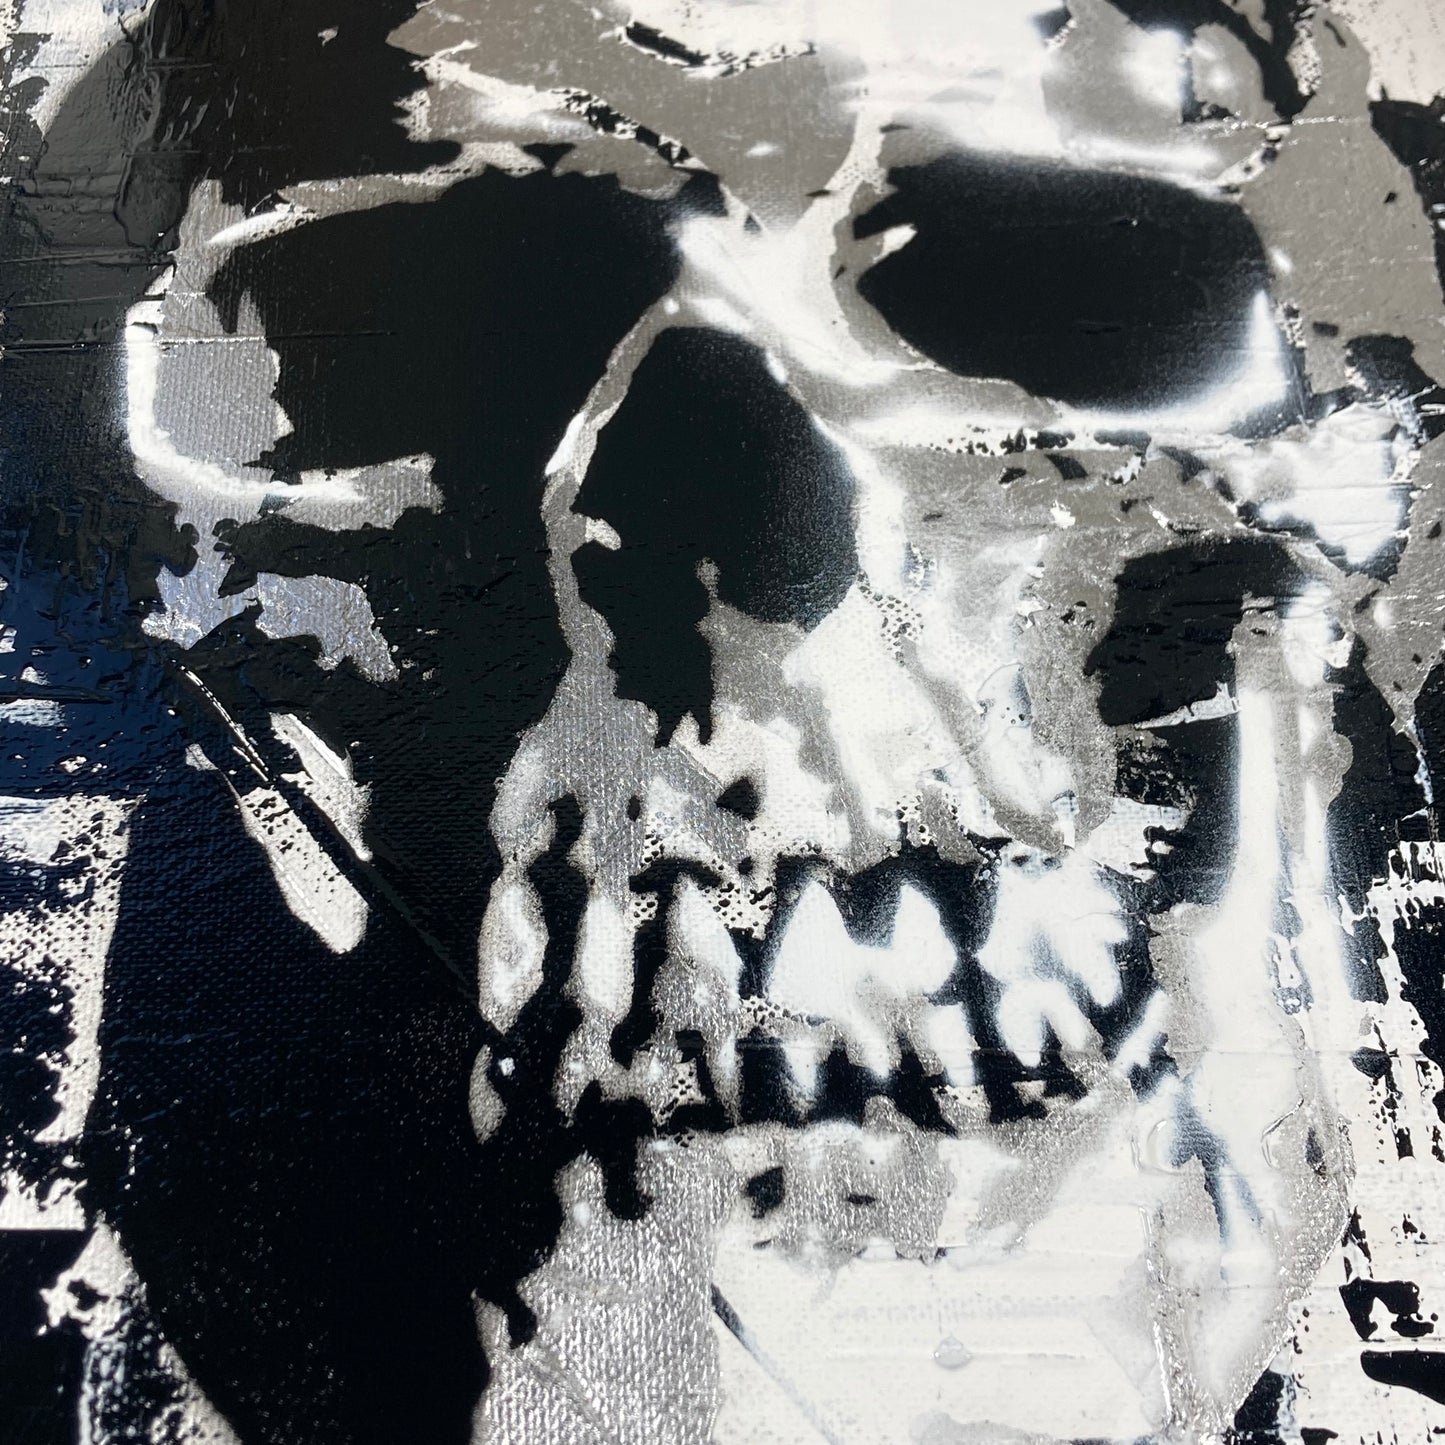 Skull Designs on Canvas